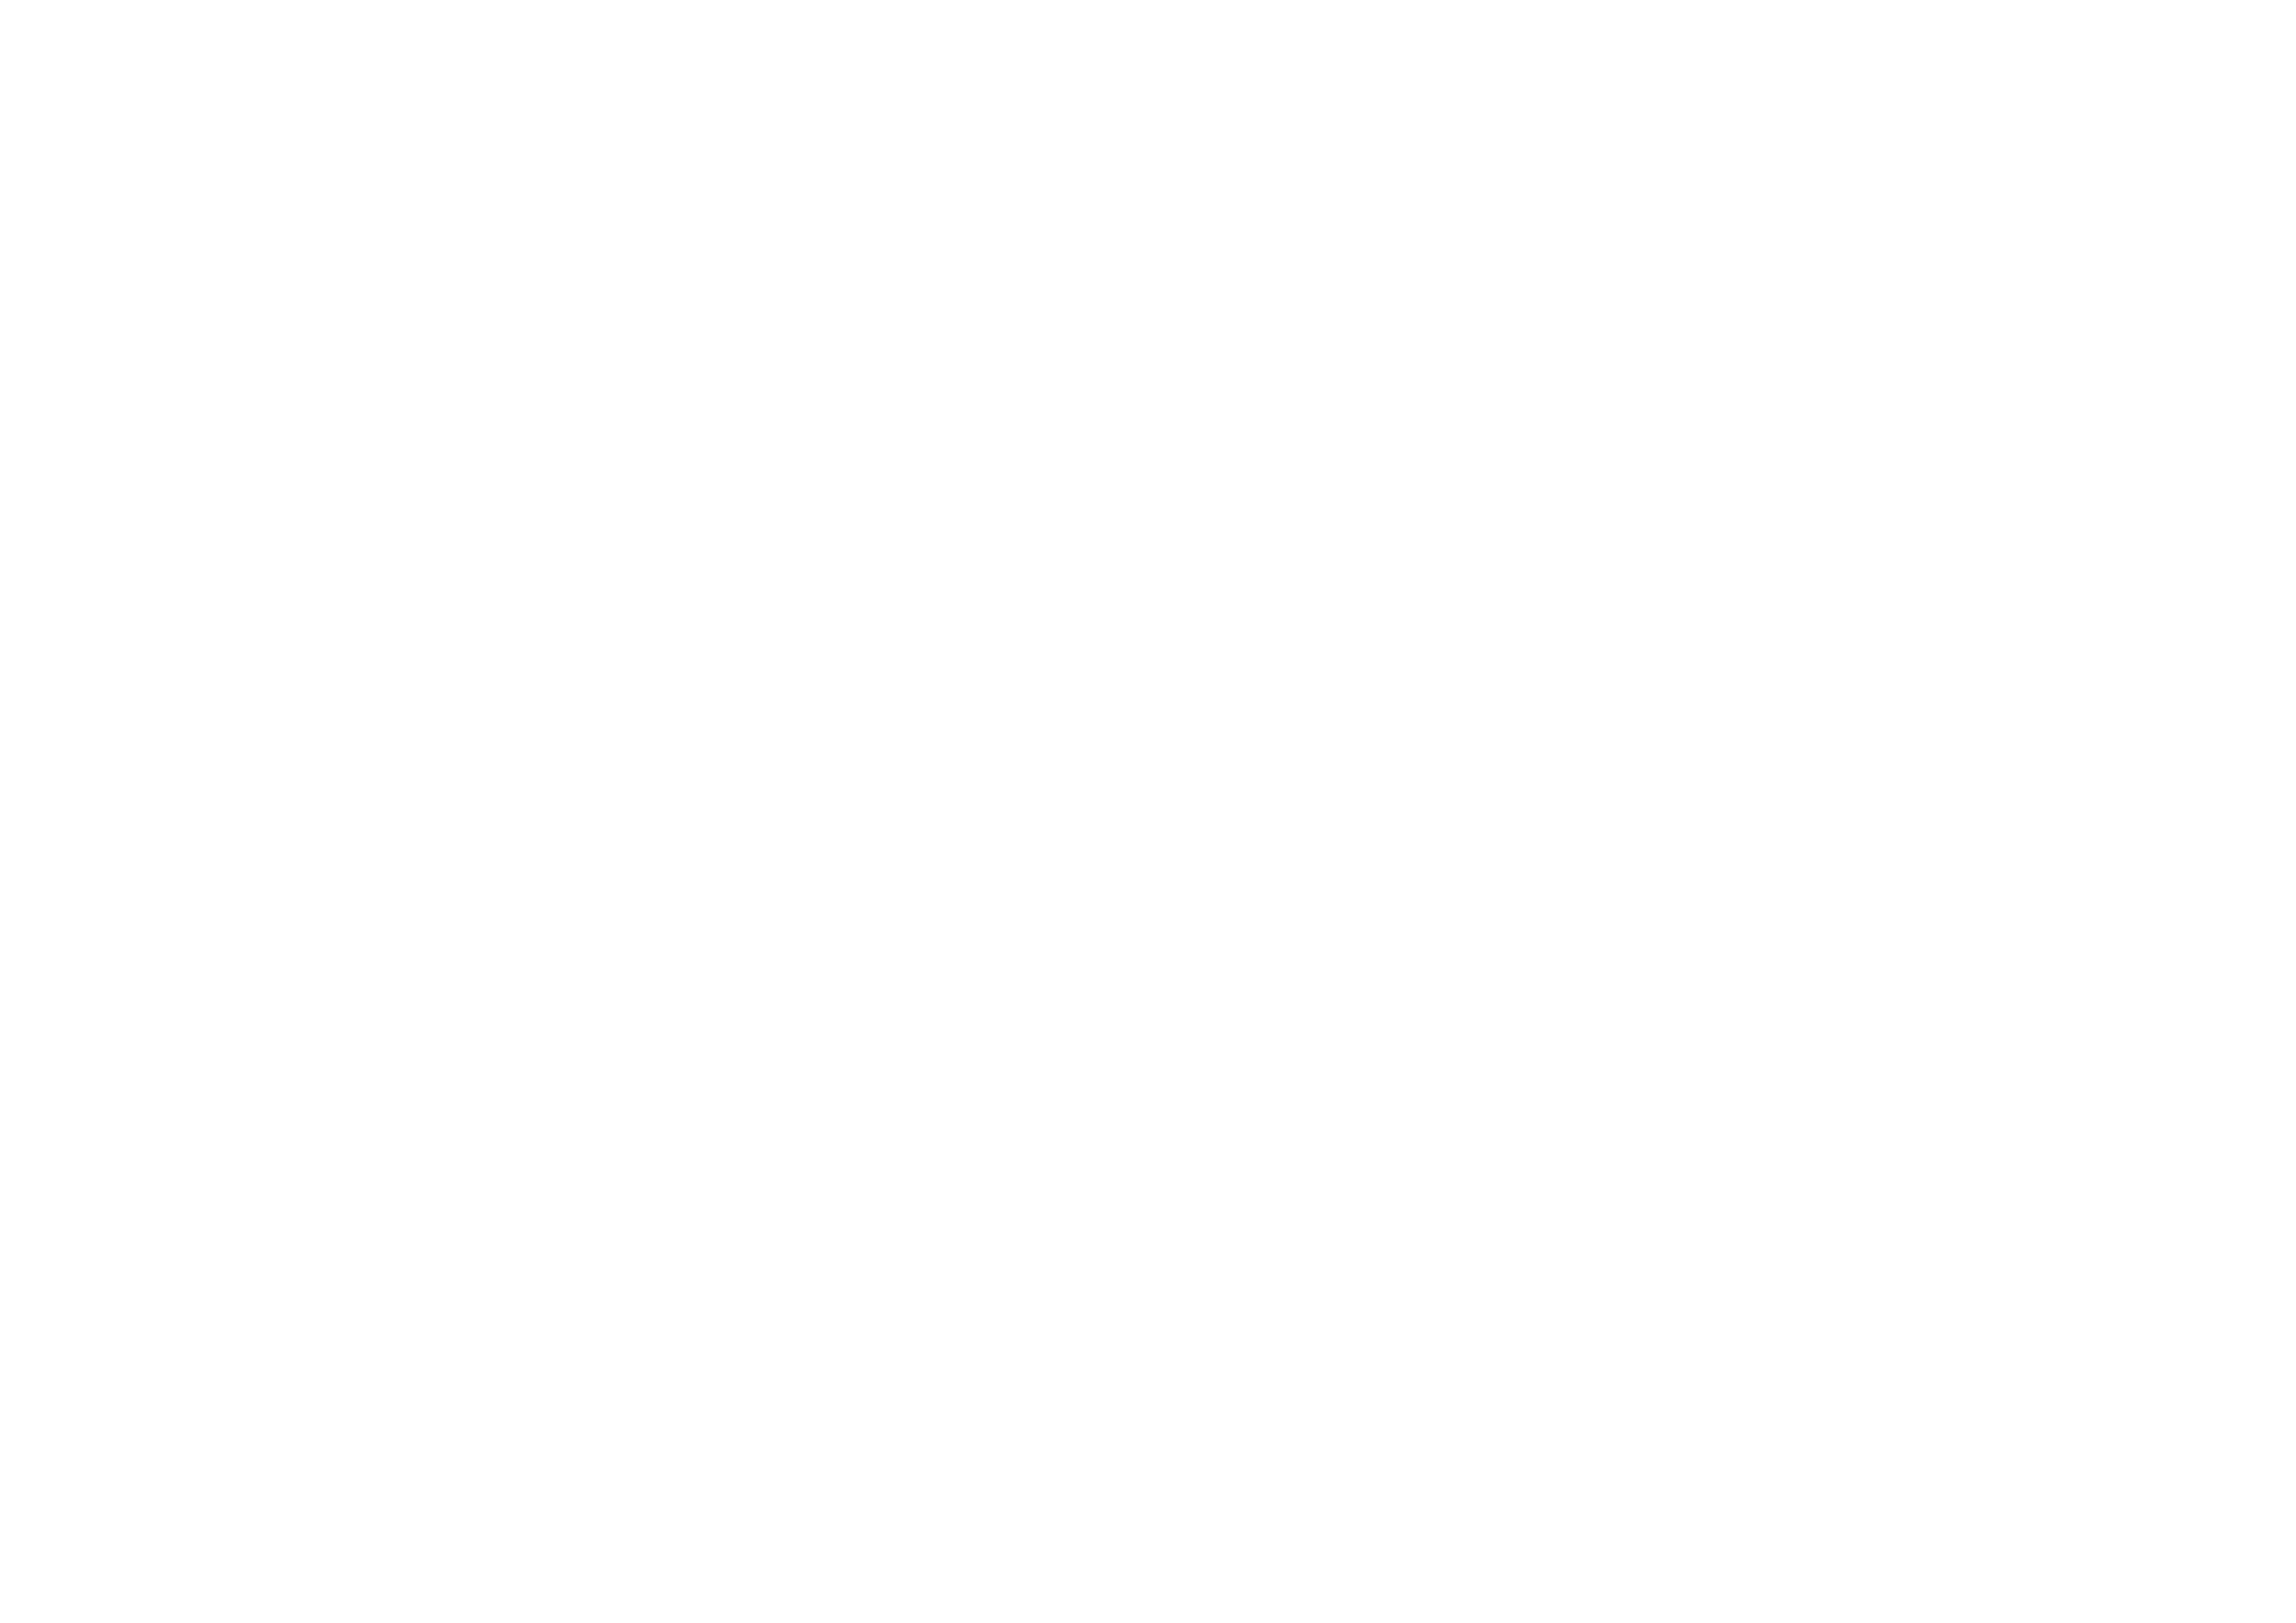 N012 Group